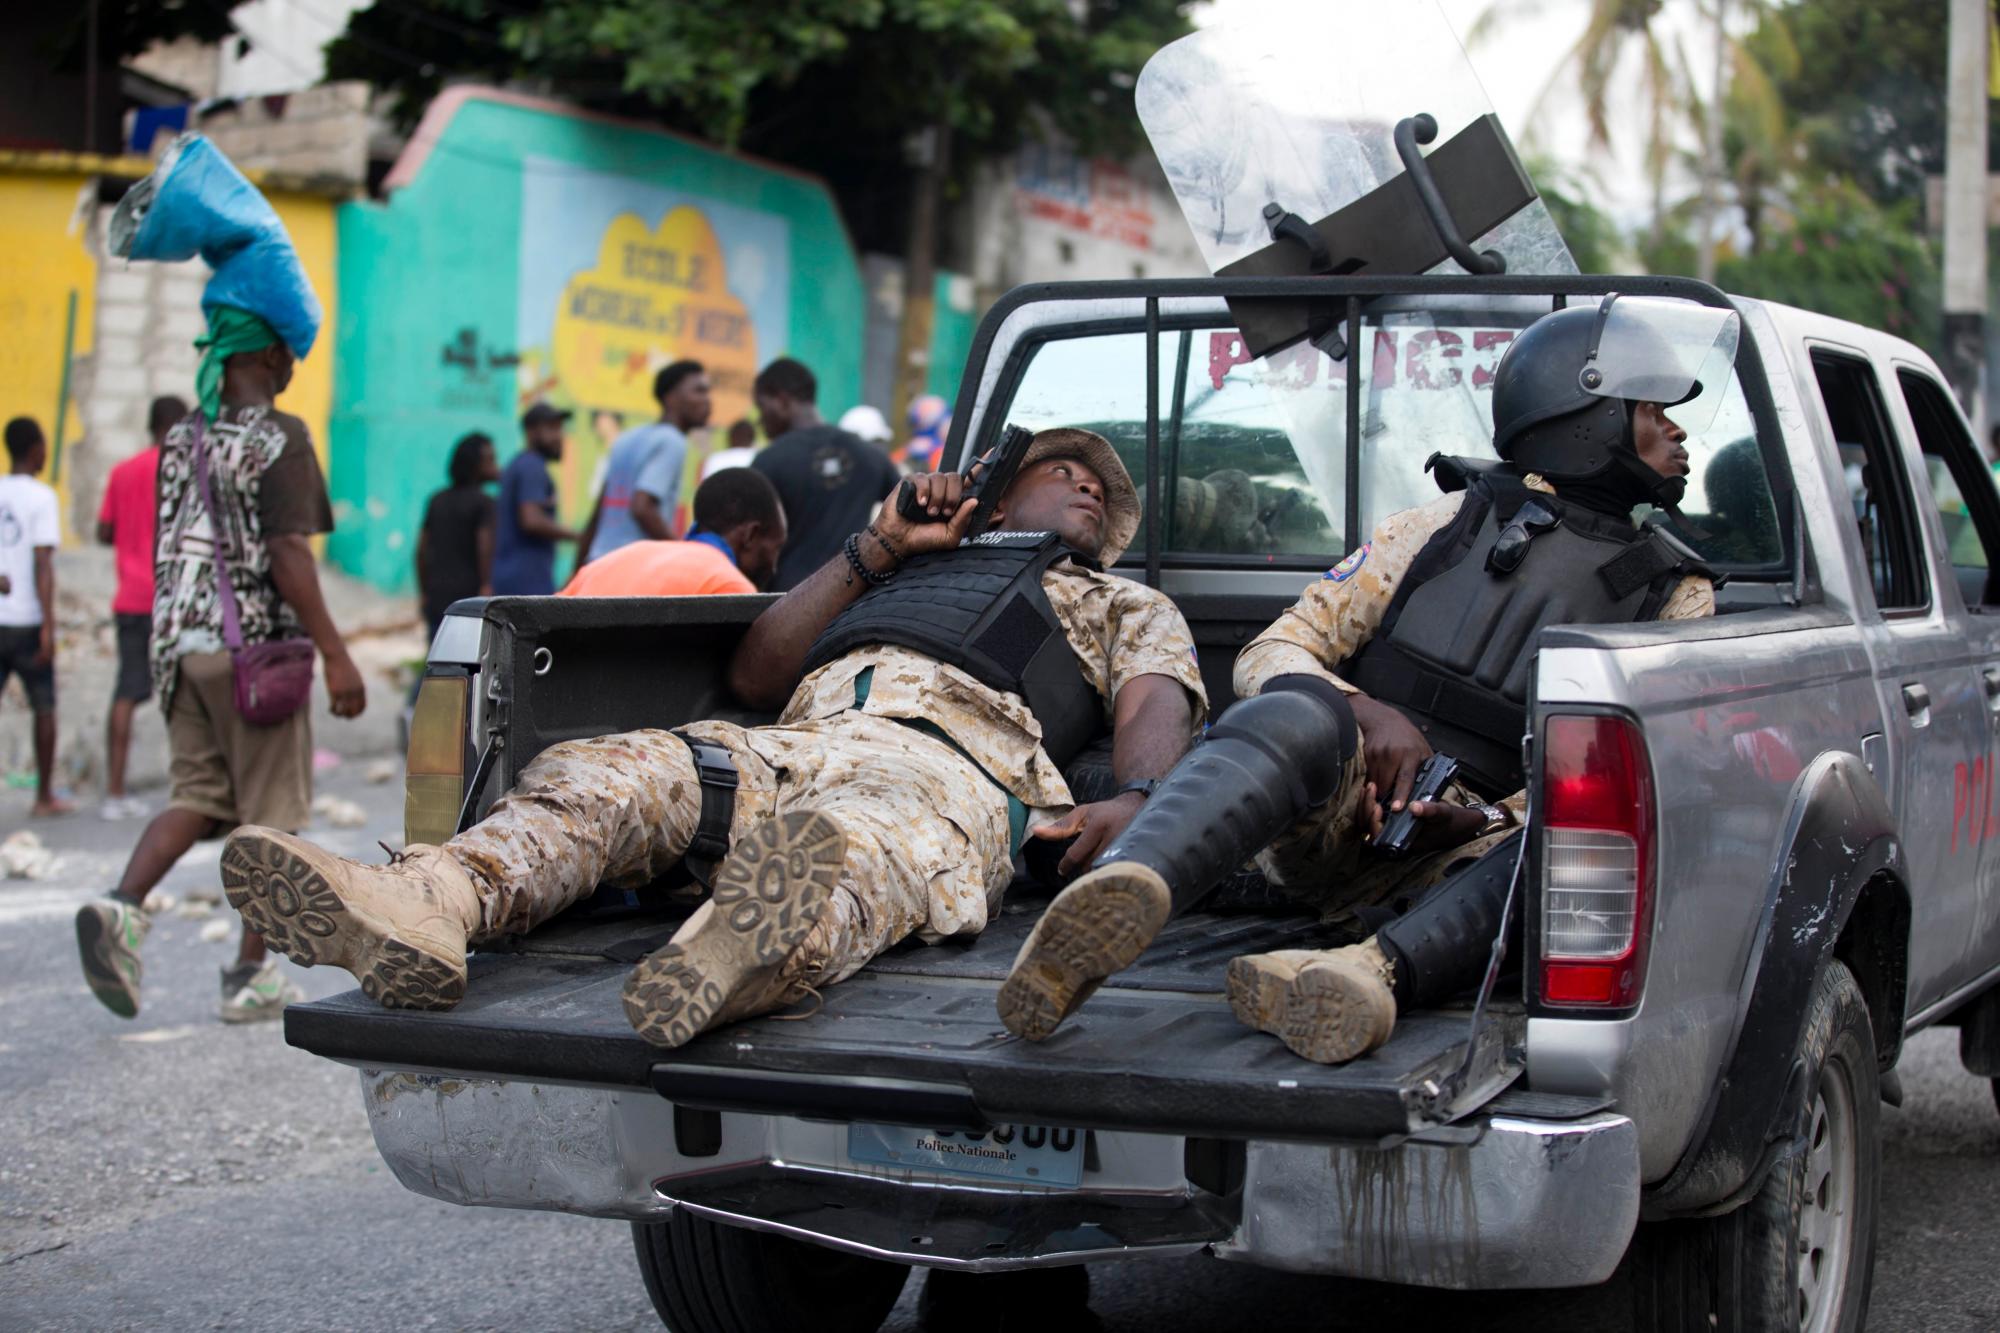 Oficiales de policía viajan en la parte trasera de una camioneta con sus armas desenfundadas durante una protesta para exigir la renuncia del presidente de Haití, Jovenel Moise, en el 216 aniversario de la Batalla de Vertieres en Puerto Príncipe, Haití, el lunes 18 de noviembre , 2019. Al menos cuatro personas fueron baleadas y heridas durante una pequeña protesta en la capital de Haití después de un discurso del presidente Moise. Un periodista local, un oficial de policía y dos manifestantes fueron trasladados rápidamente con heridas de bala aparentes.